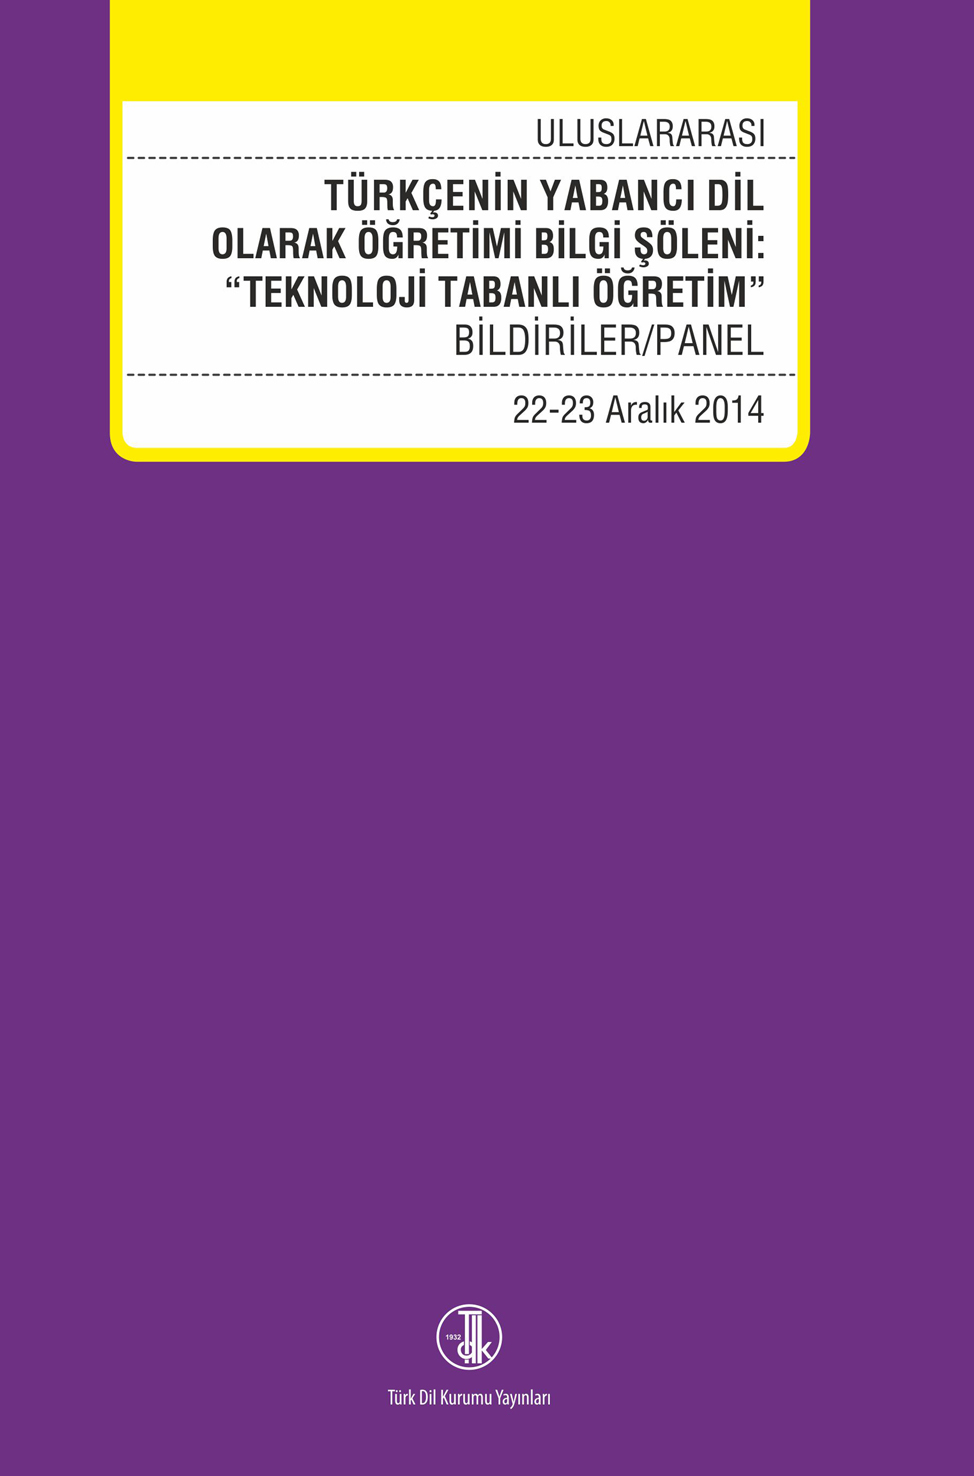 UlusarasıTürkçenin Yabancı Dil Olarak Öğretimi Bilgi: “Teknoloji Tabanlı Öğretim” (22-23 Aralık 2014) Panel/Bildiriler, 2022